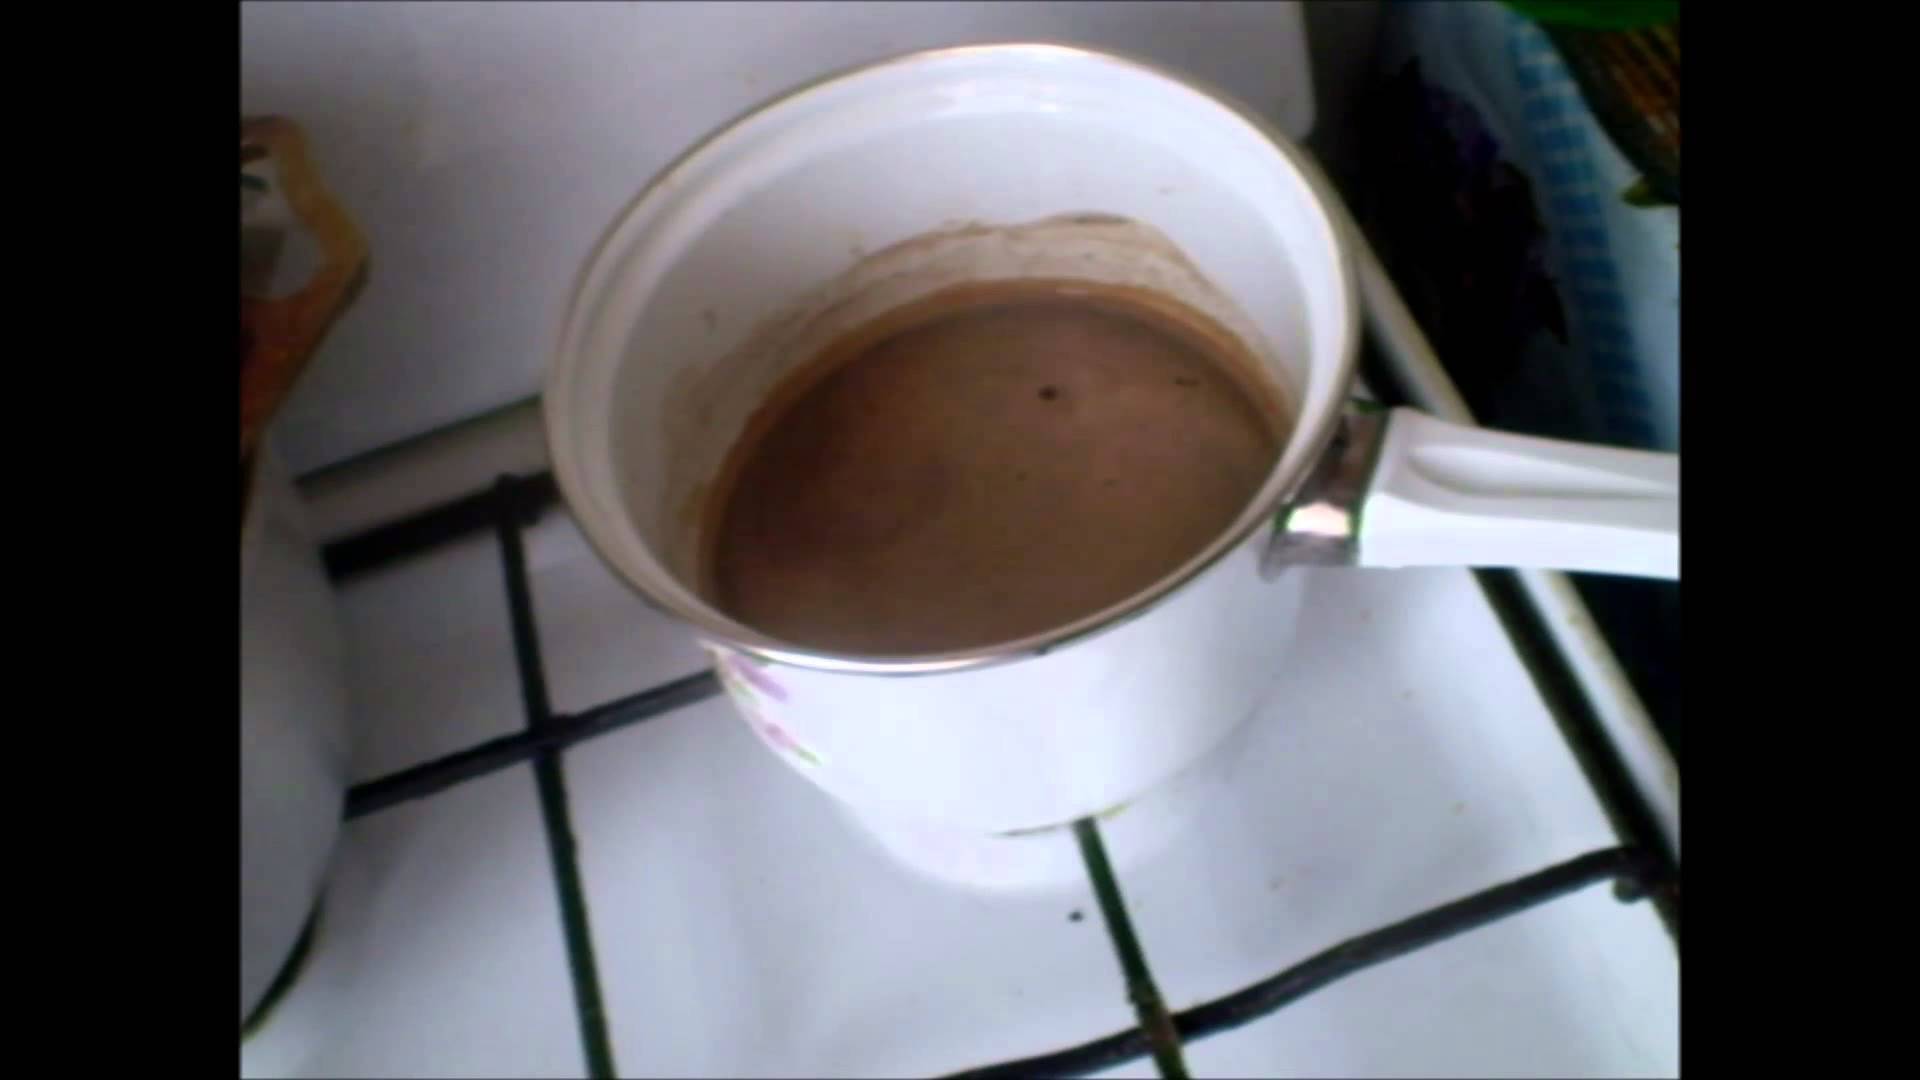 Как варить кофе в кастрюле или ковшике и как улучшить вкус напитка